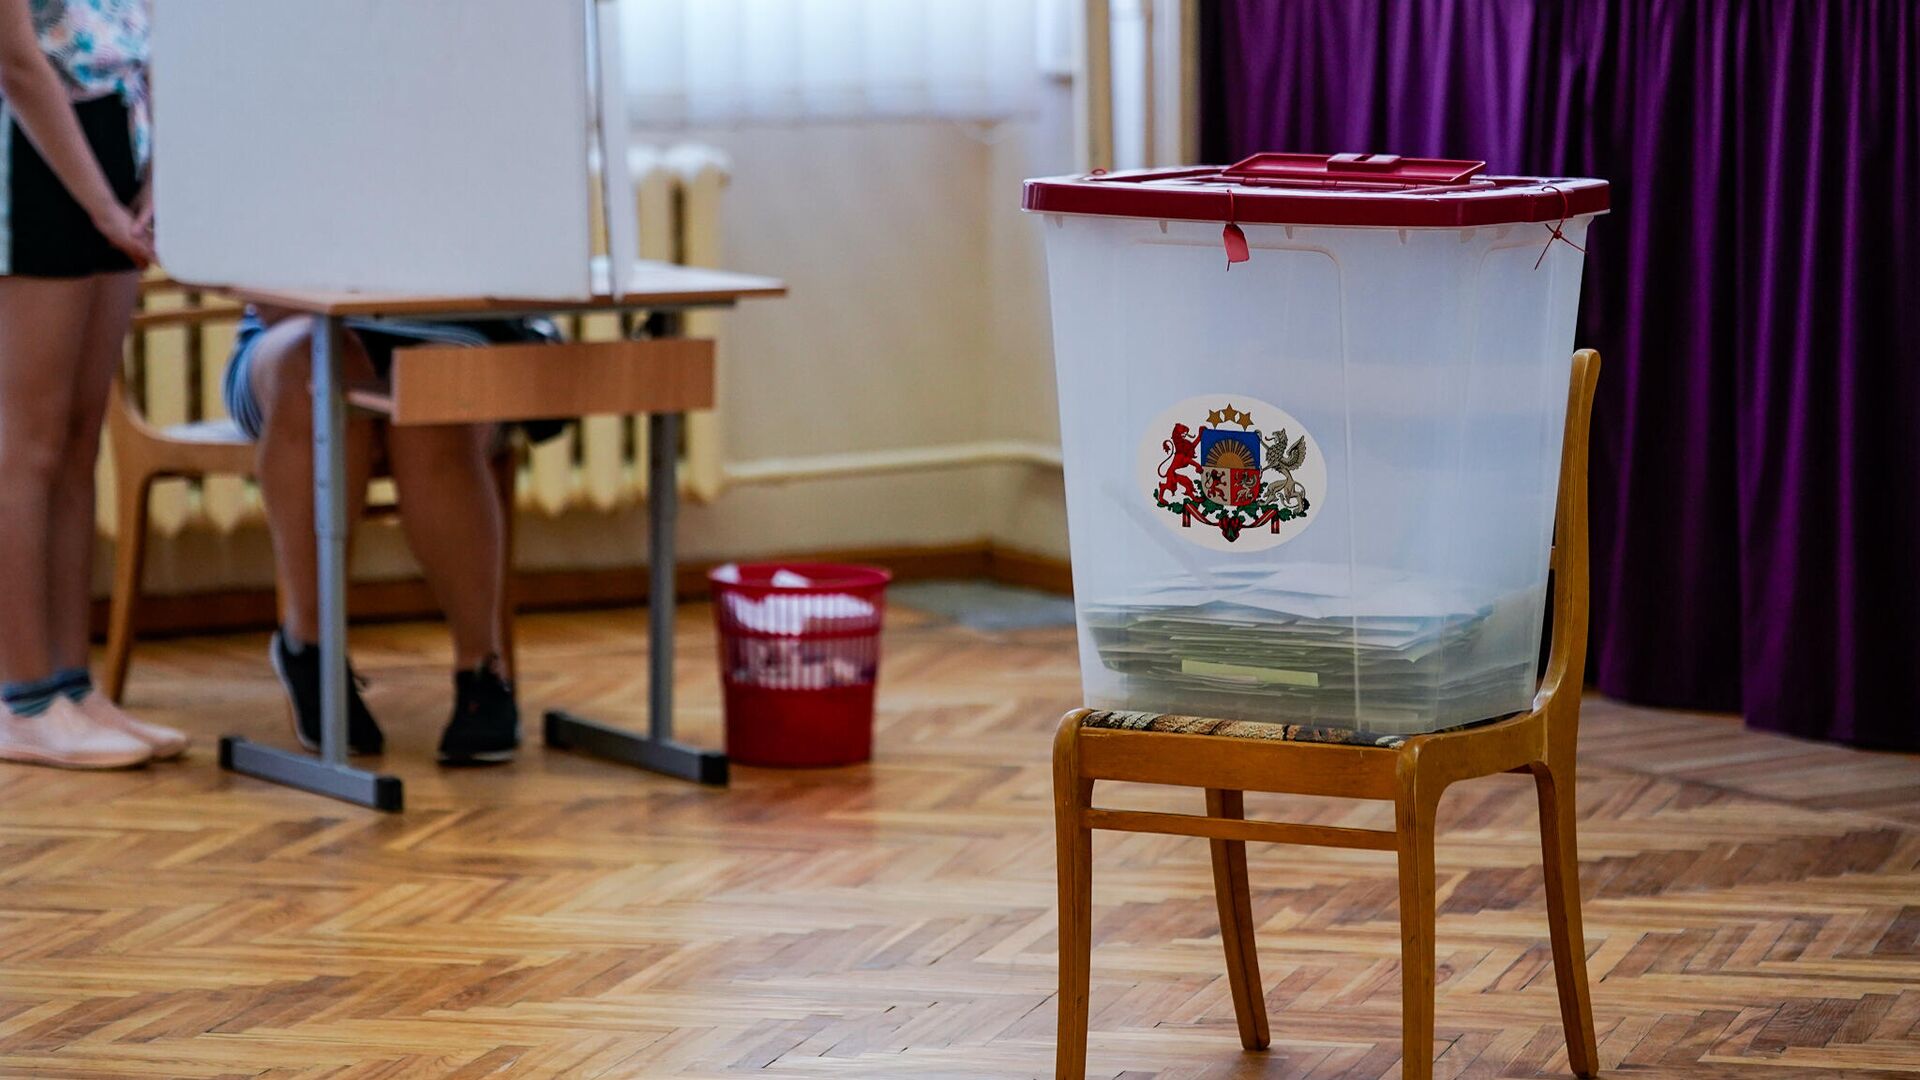 Урна для голосования на избирательном участке в Елгаве - Sputnik Латвия, 1920, 17.08.2021